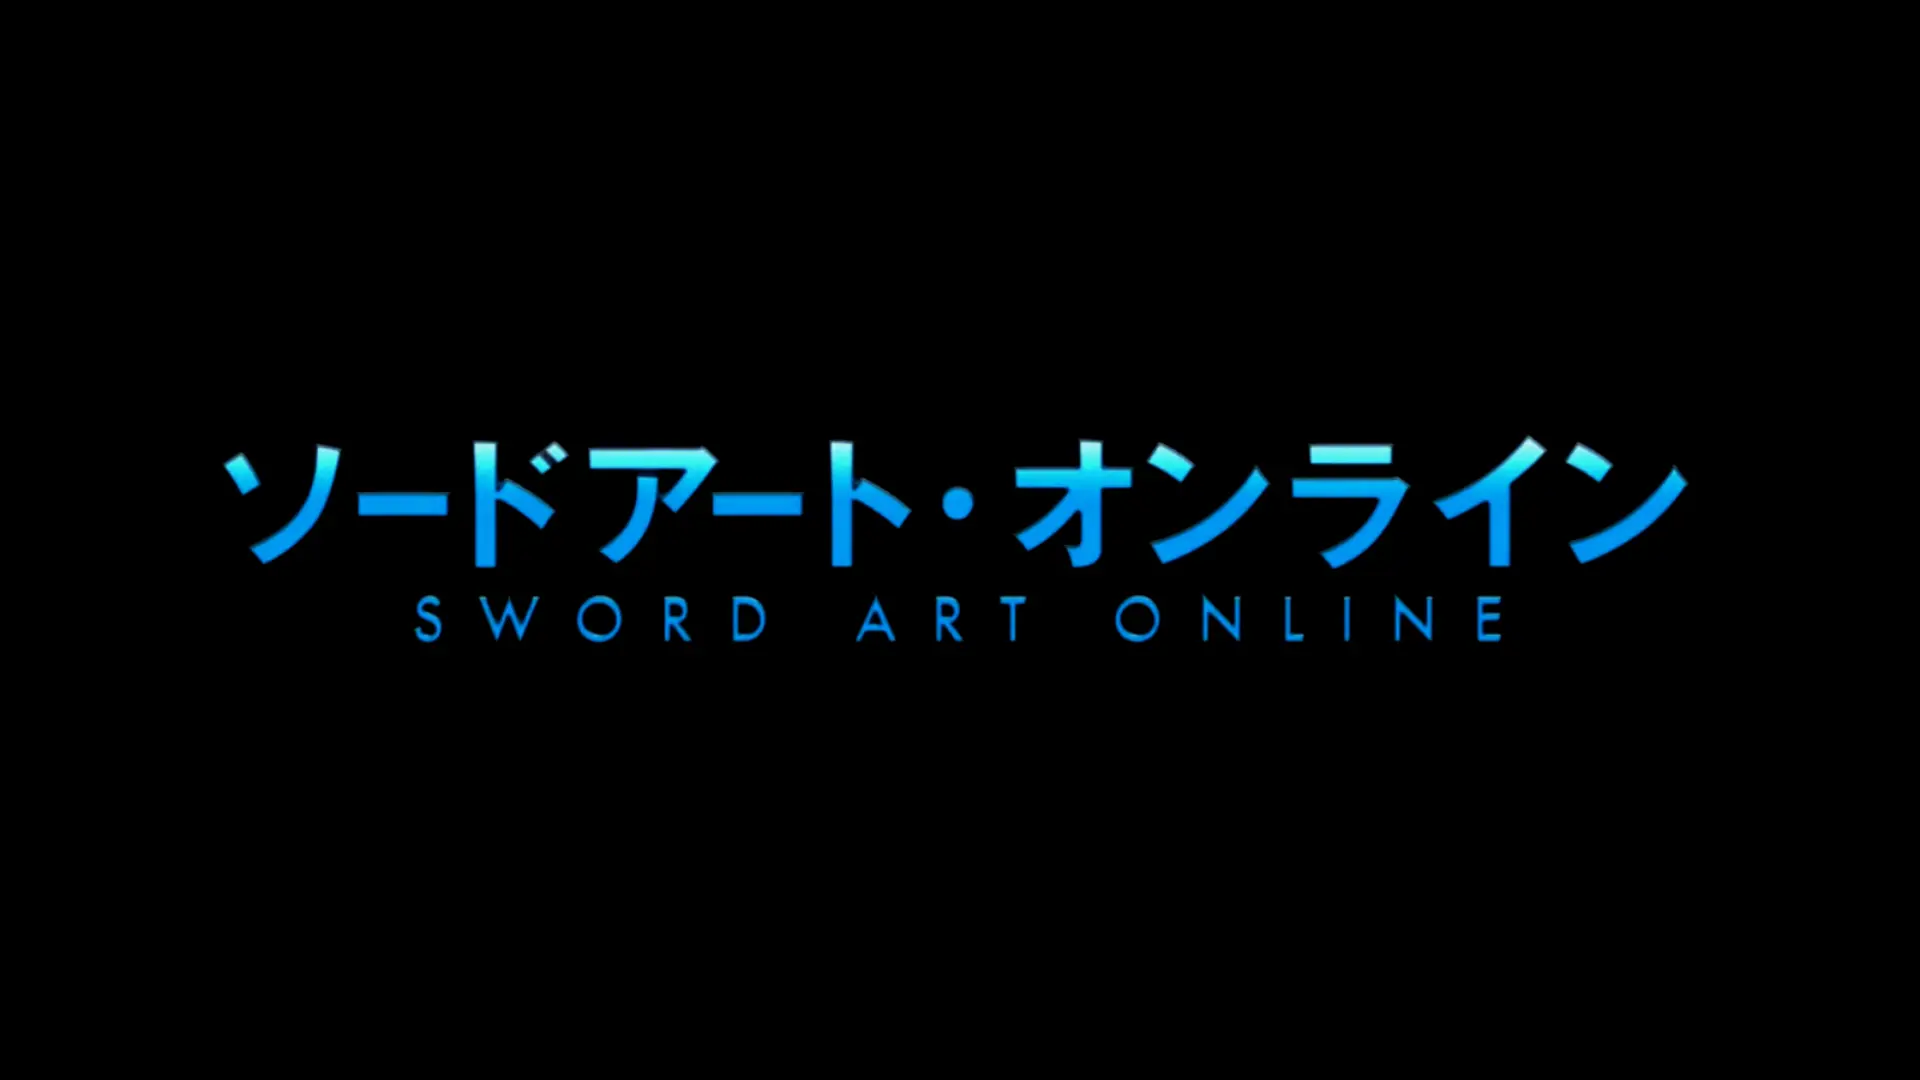 Sword Art Online wallpaper 11